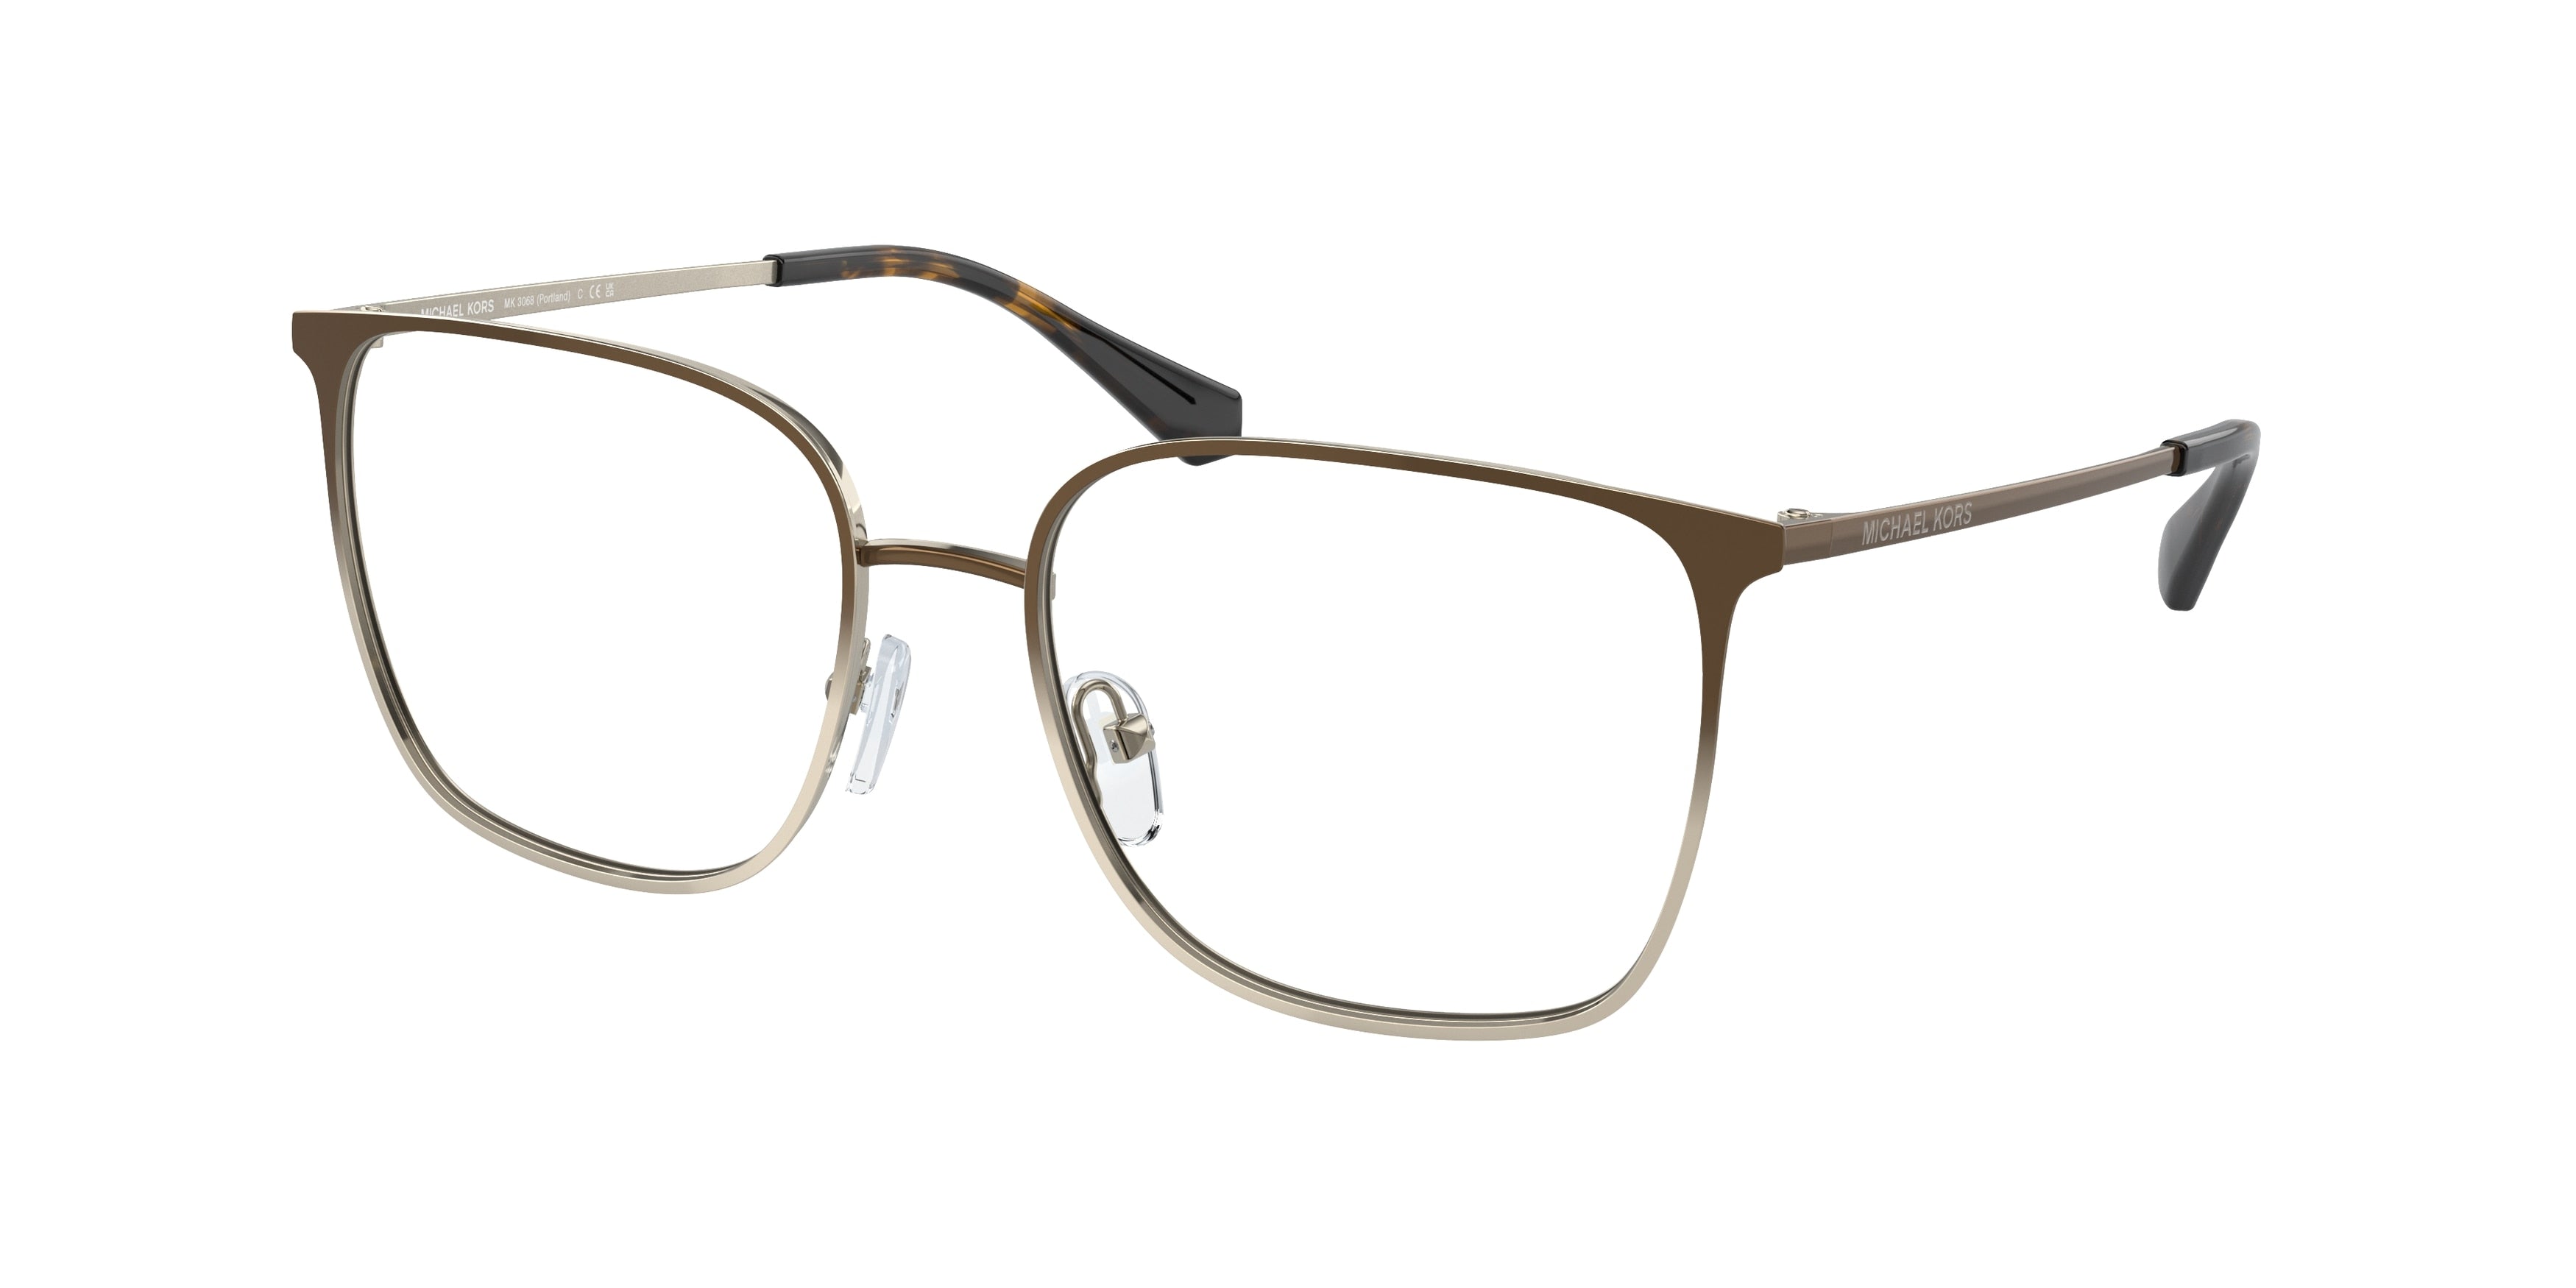 Michael Kors PORTLAND MK3068 Square Eyeglasses  1014-Mink Light Gold Gradient 54-140-17 - Color Map Gold